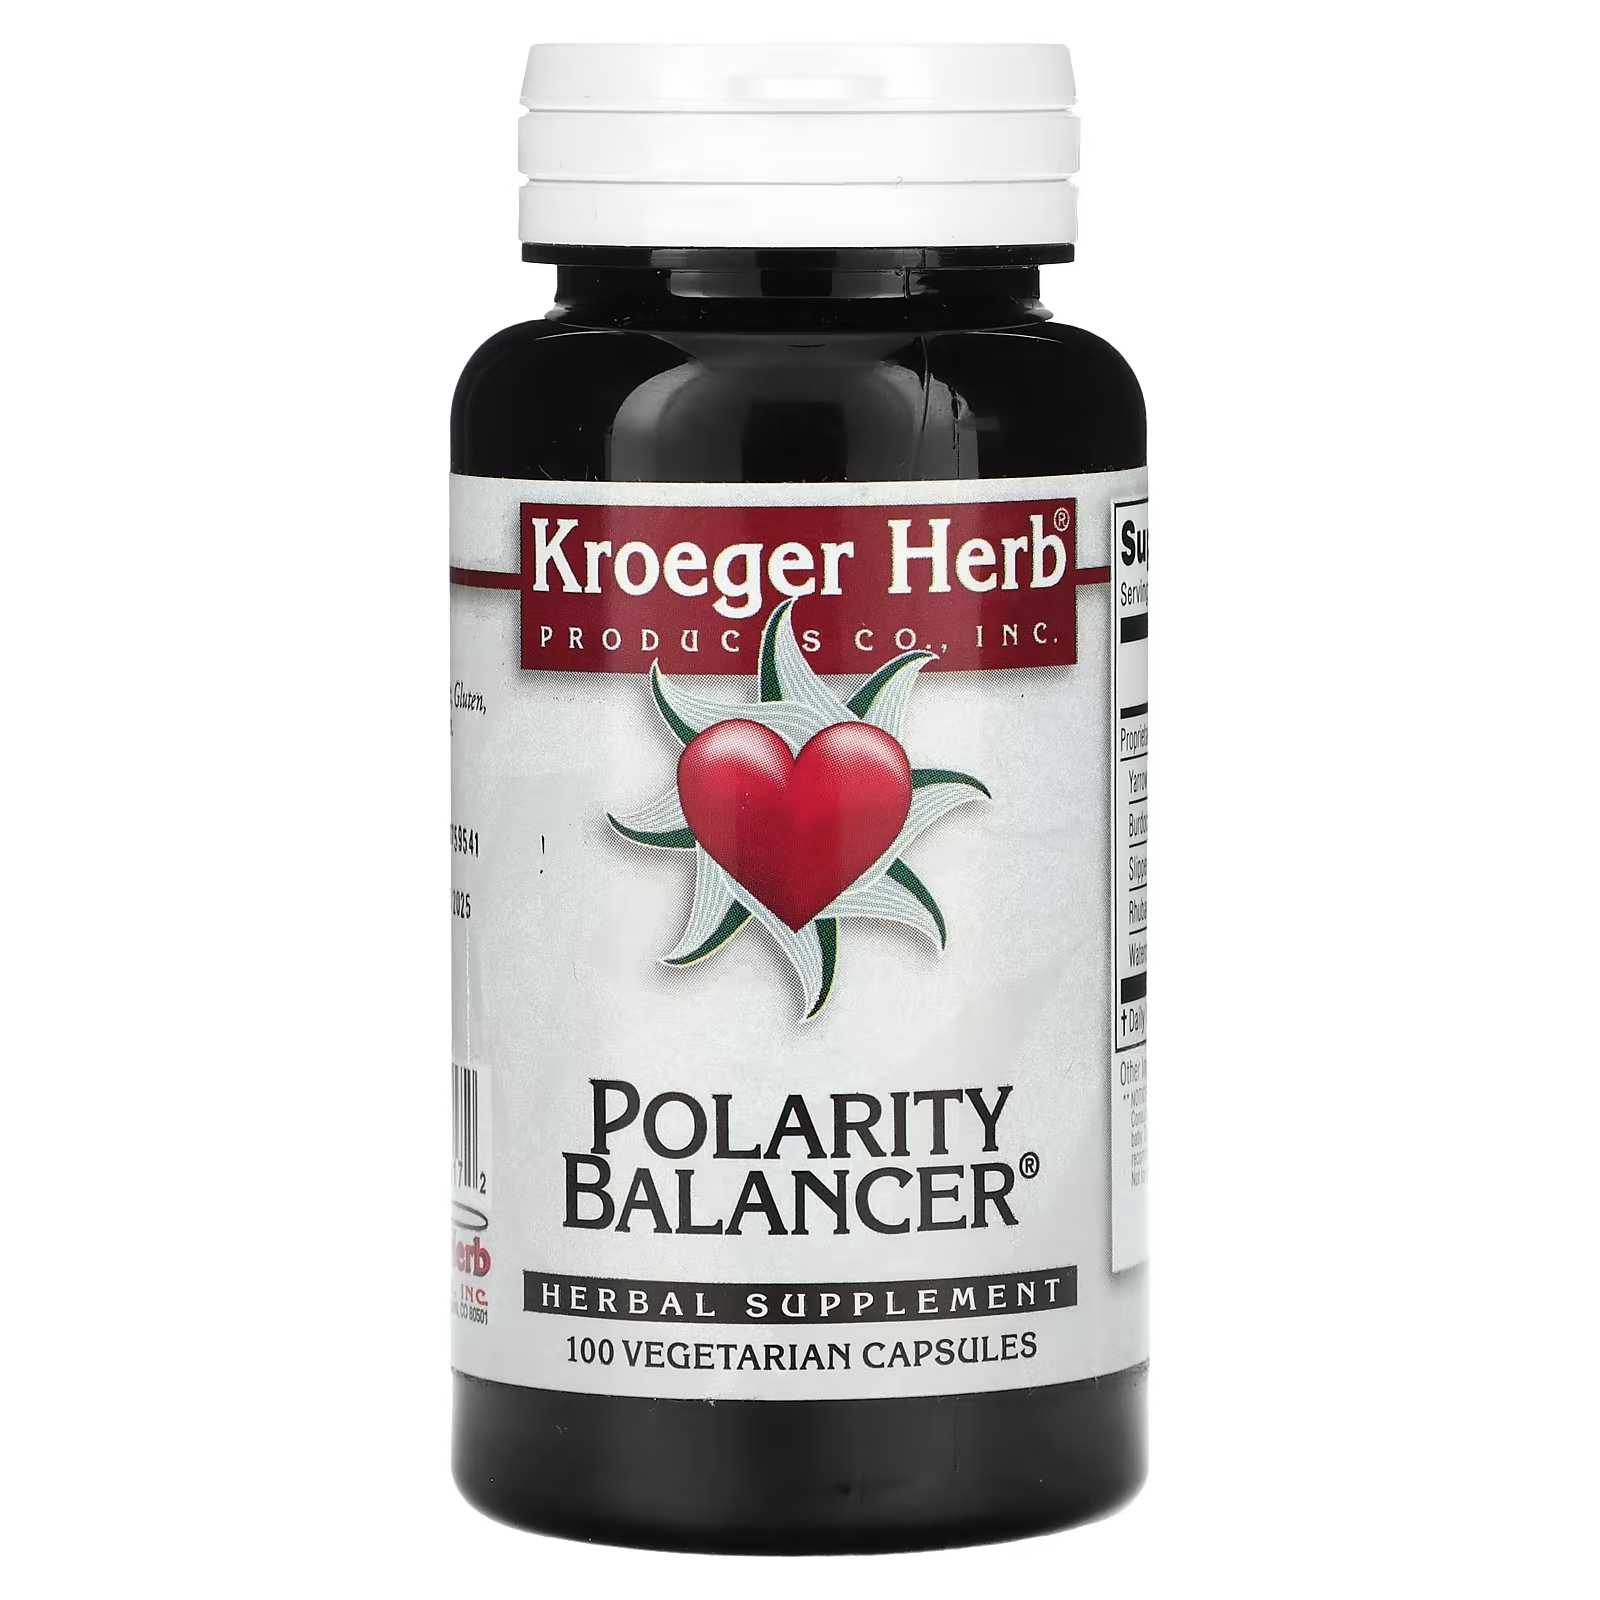 Растительная добавка Kroeger Herb Co балансировщик полярности, 100 капсул растительная добавка kroeger herb co mover 100 капсул